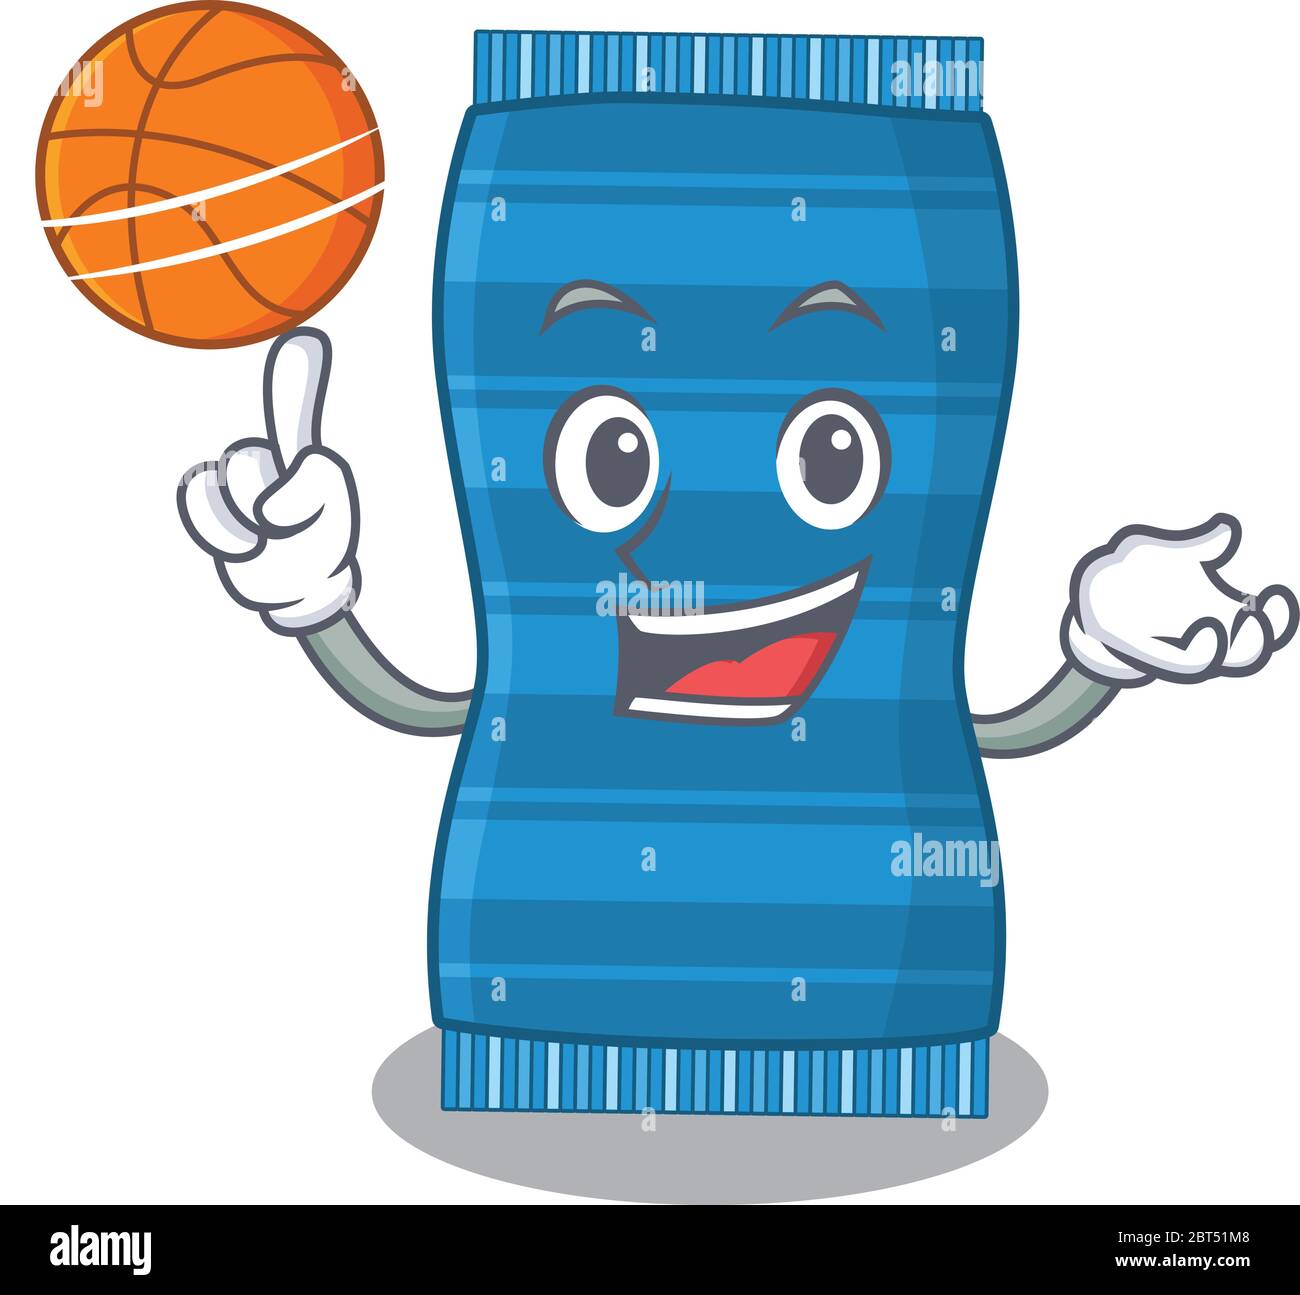 Serviette de plage au motif mascotte de dessin animé sportif avec basketball  Image Vectorielle Stock - Alamy